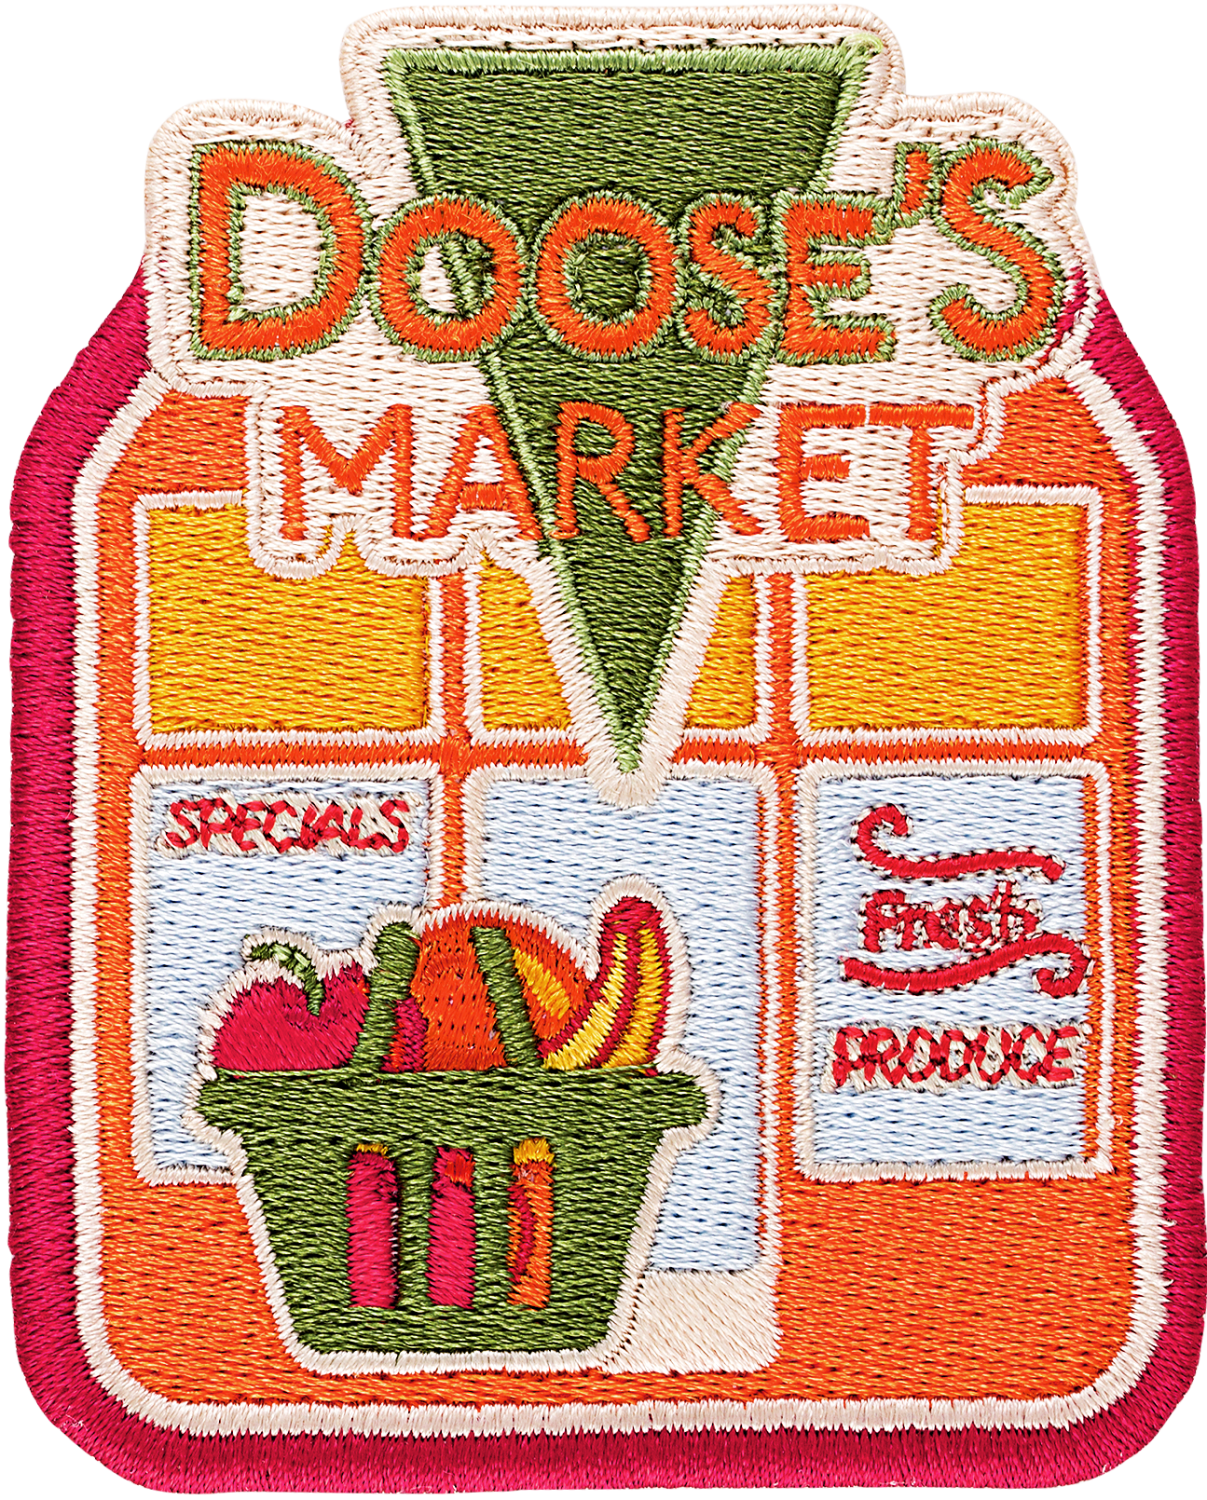 Doose's Market Patch